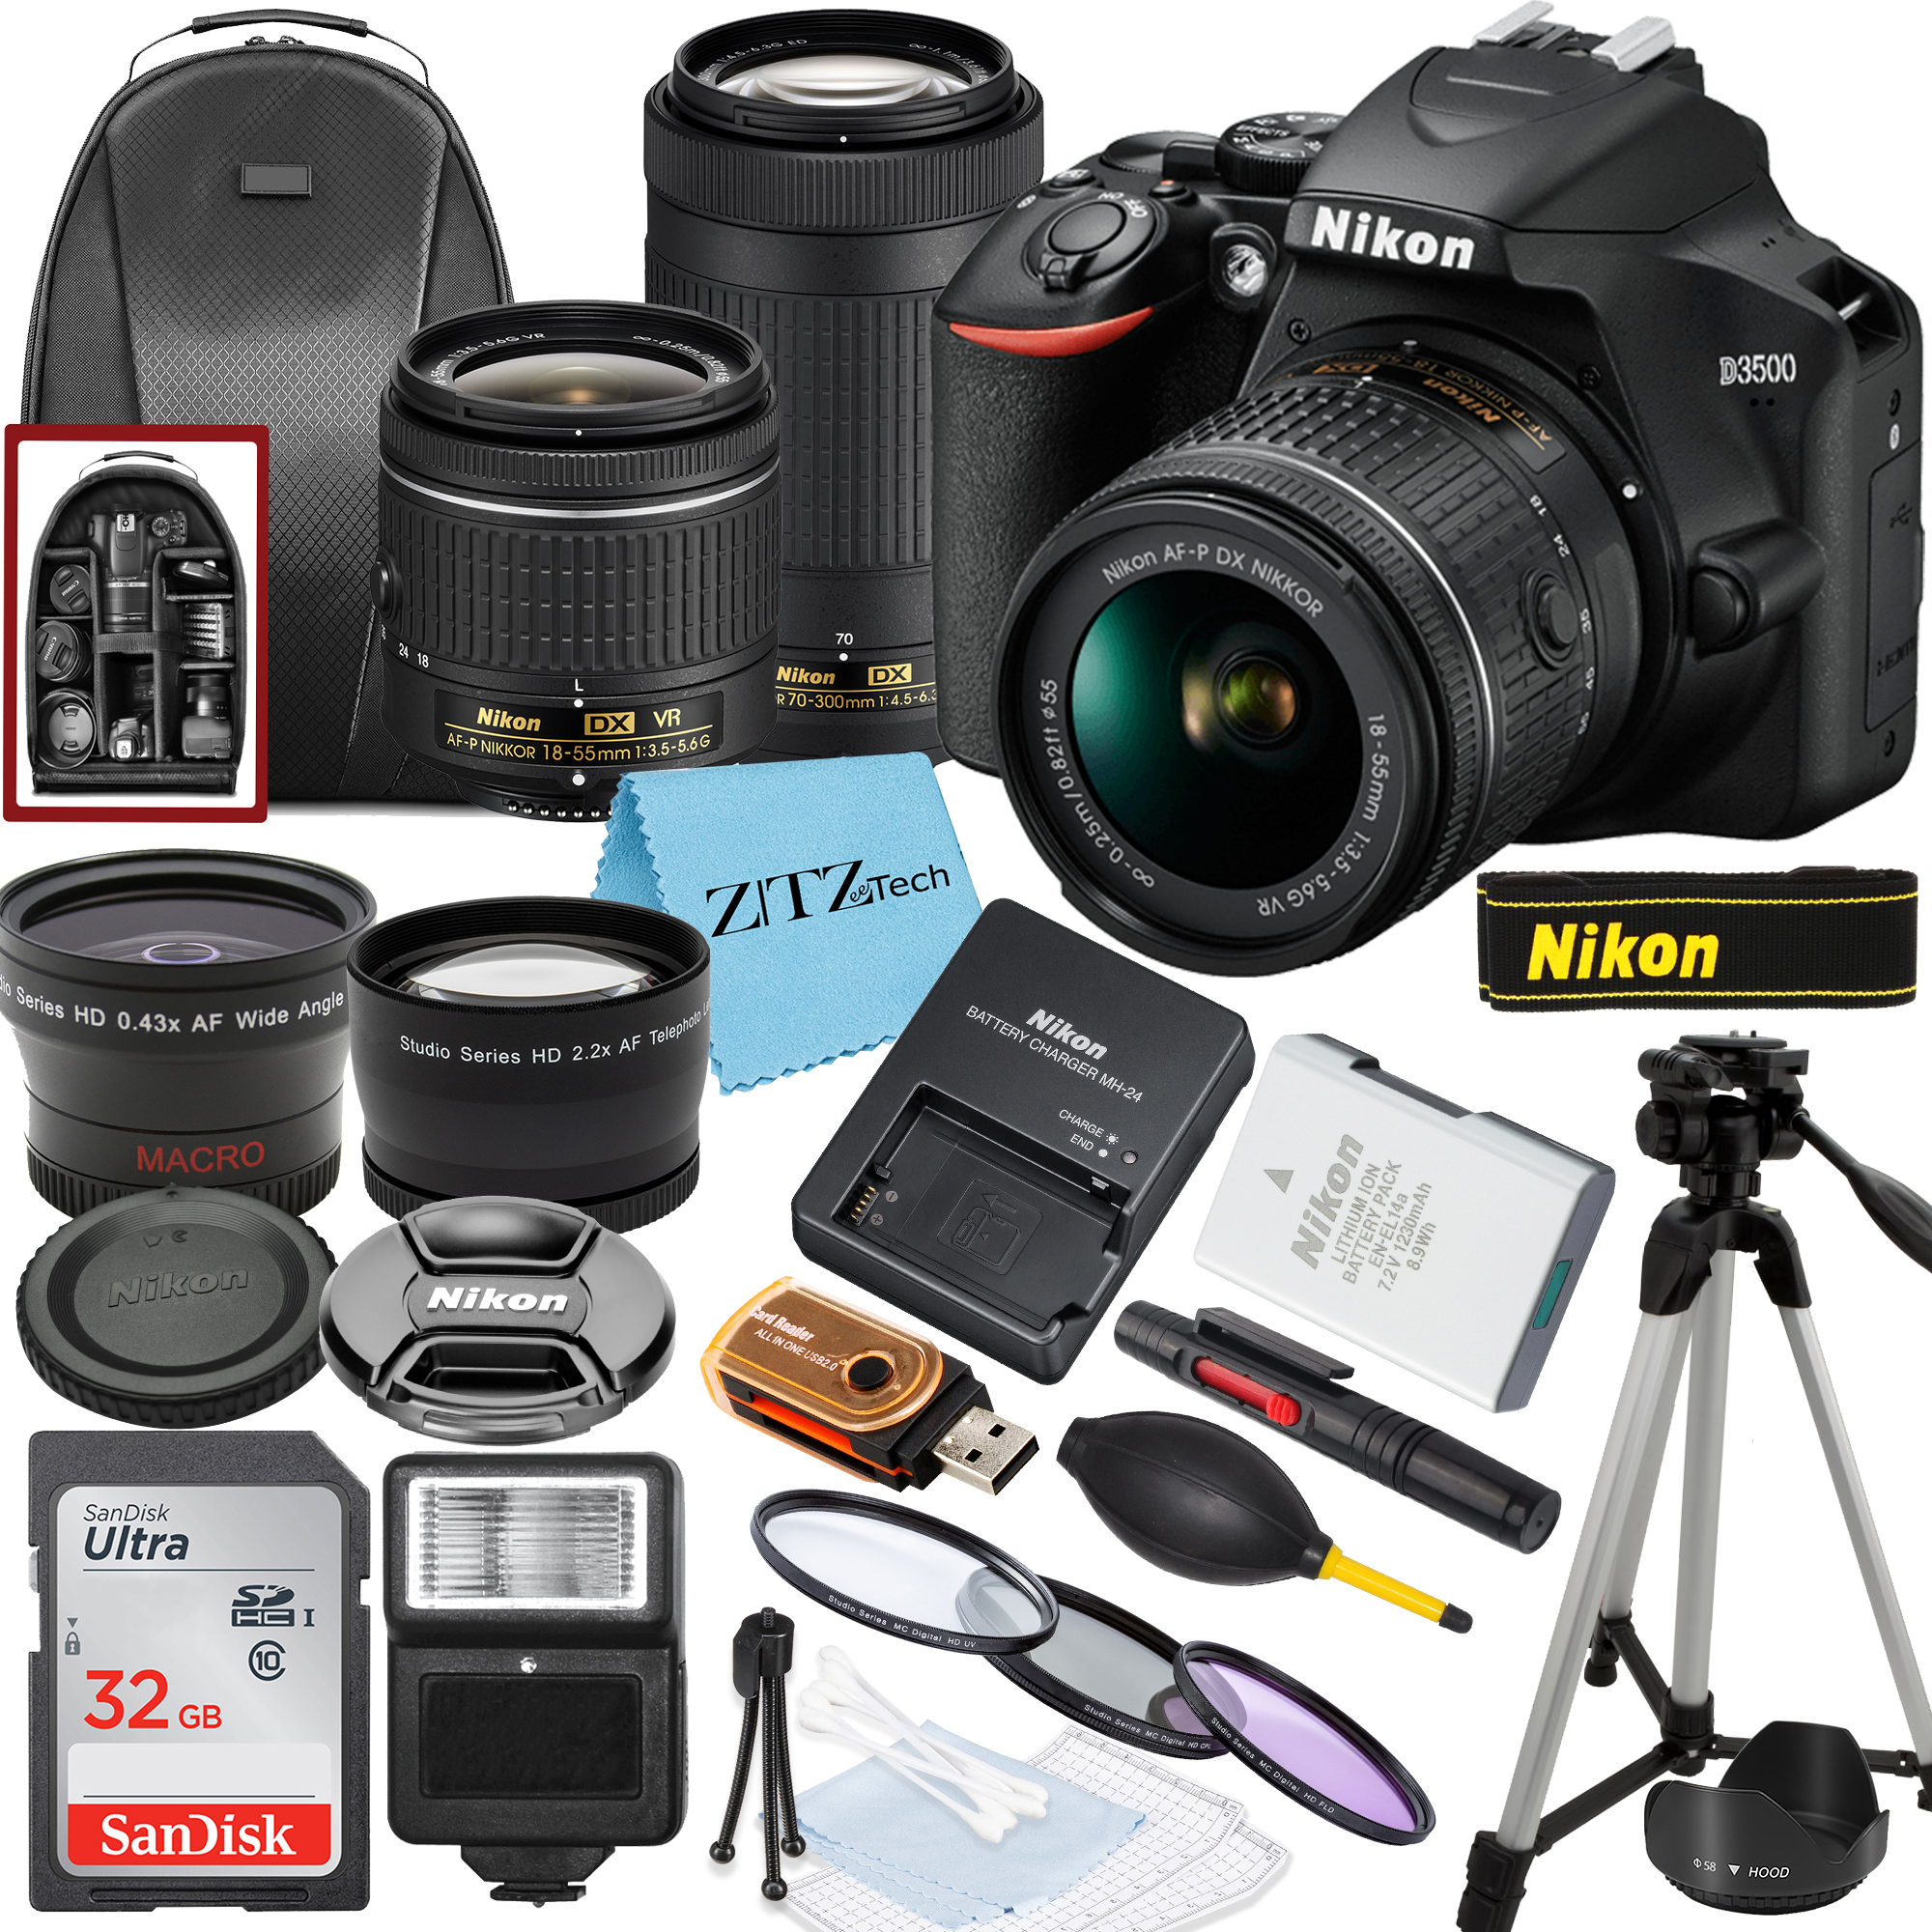 Nikon D3500 DSLR Camera with NIKKOR 18-55mm, 70-300mm Lens, SanDisk 32GB Memory, Tripod, Backpack and ZeeTech Bundle